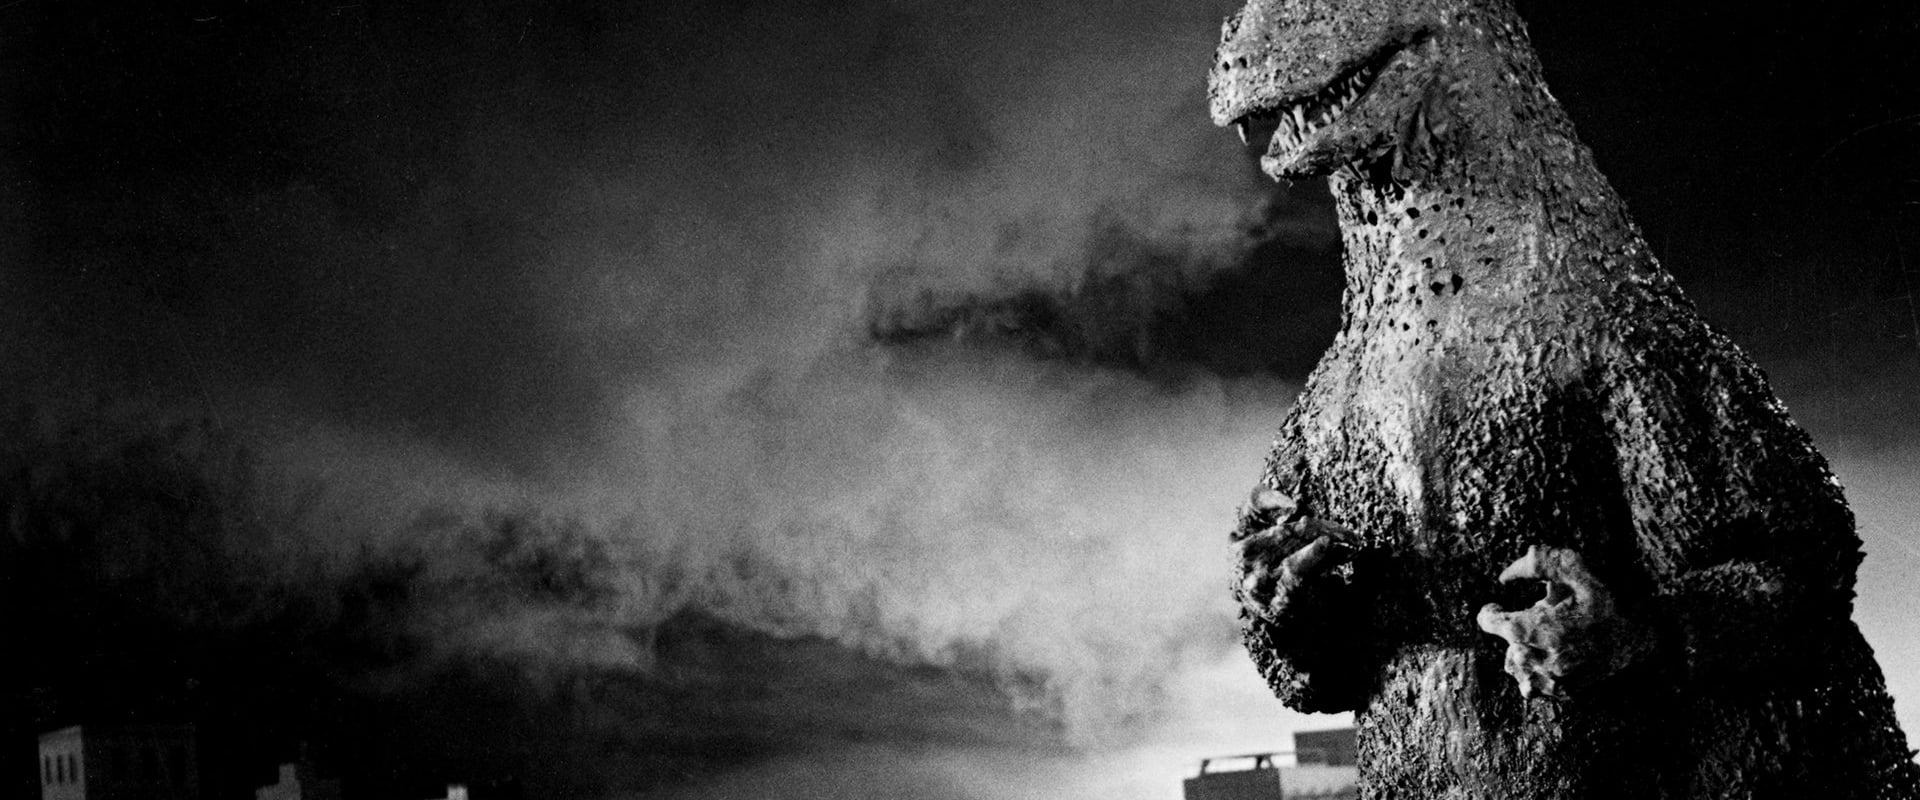 Godzilla - monstret från havet